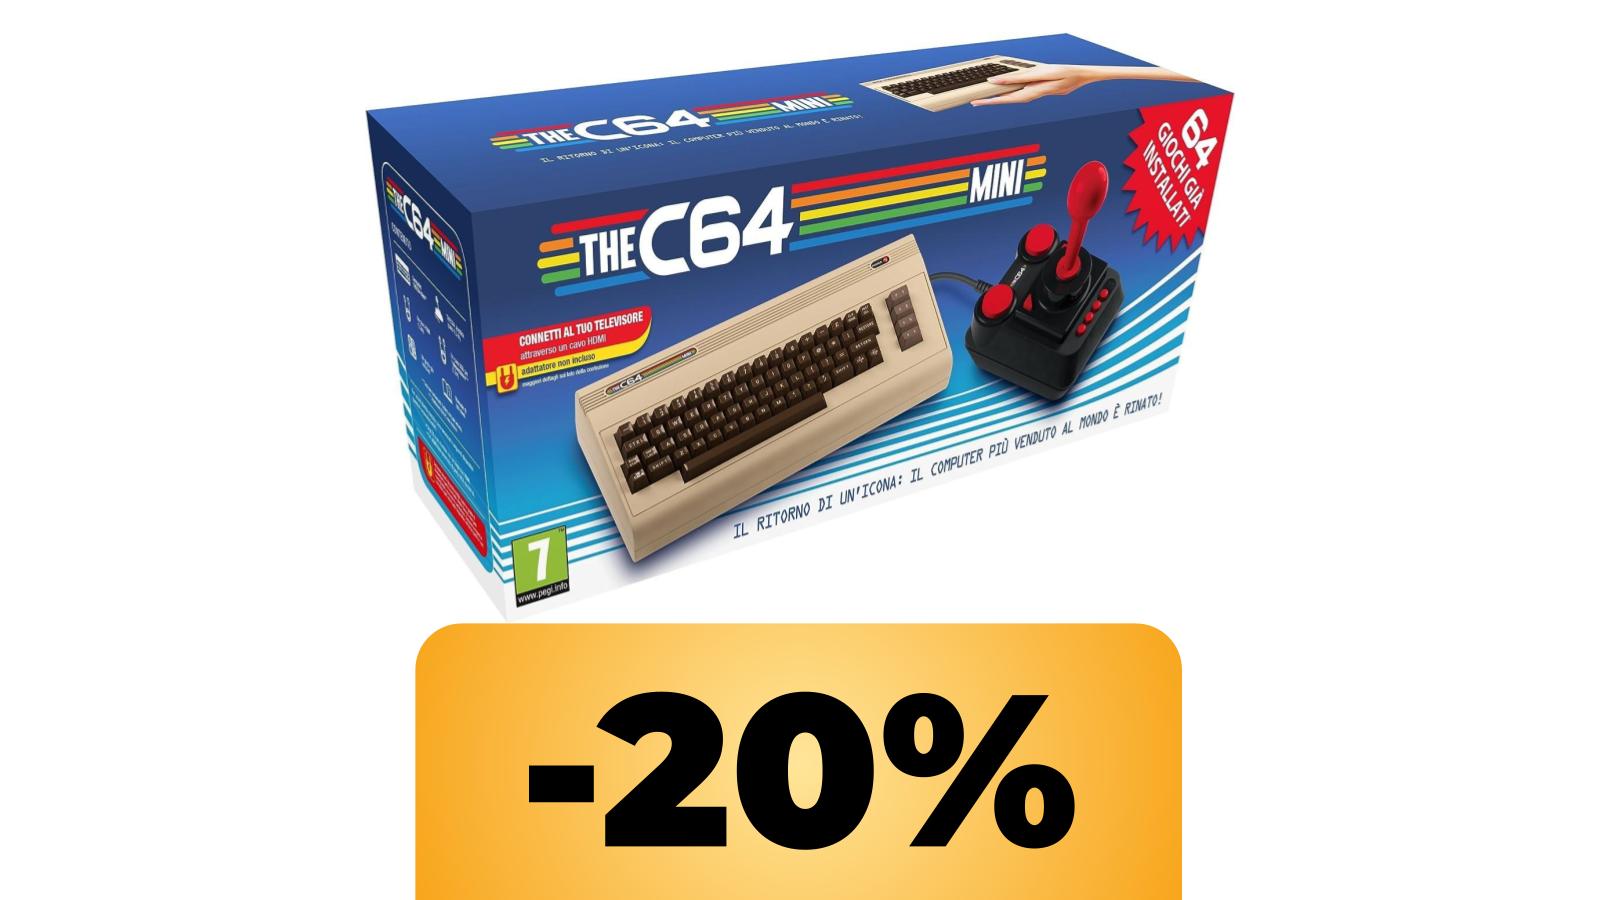 THE C64 Mini, la versione mini del Commodore 64, in sconto su Amazon